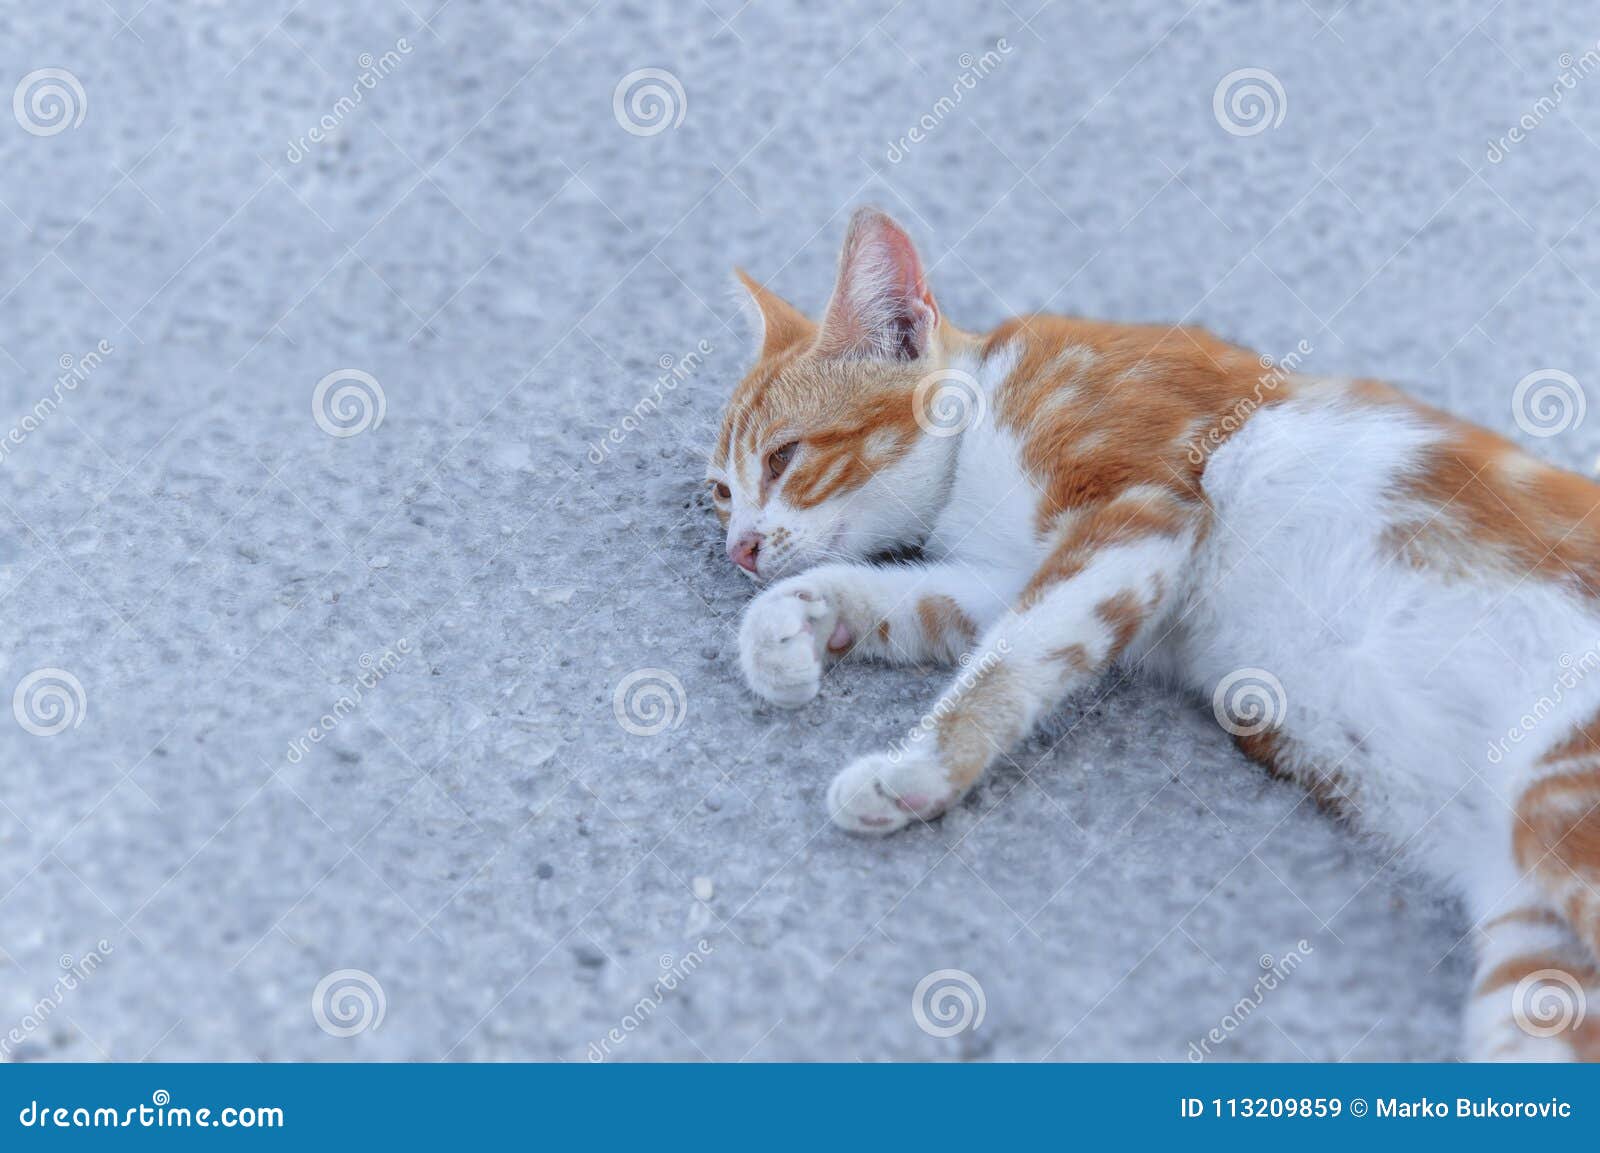 small street drifter yellow young kitten lie on asphalt